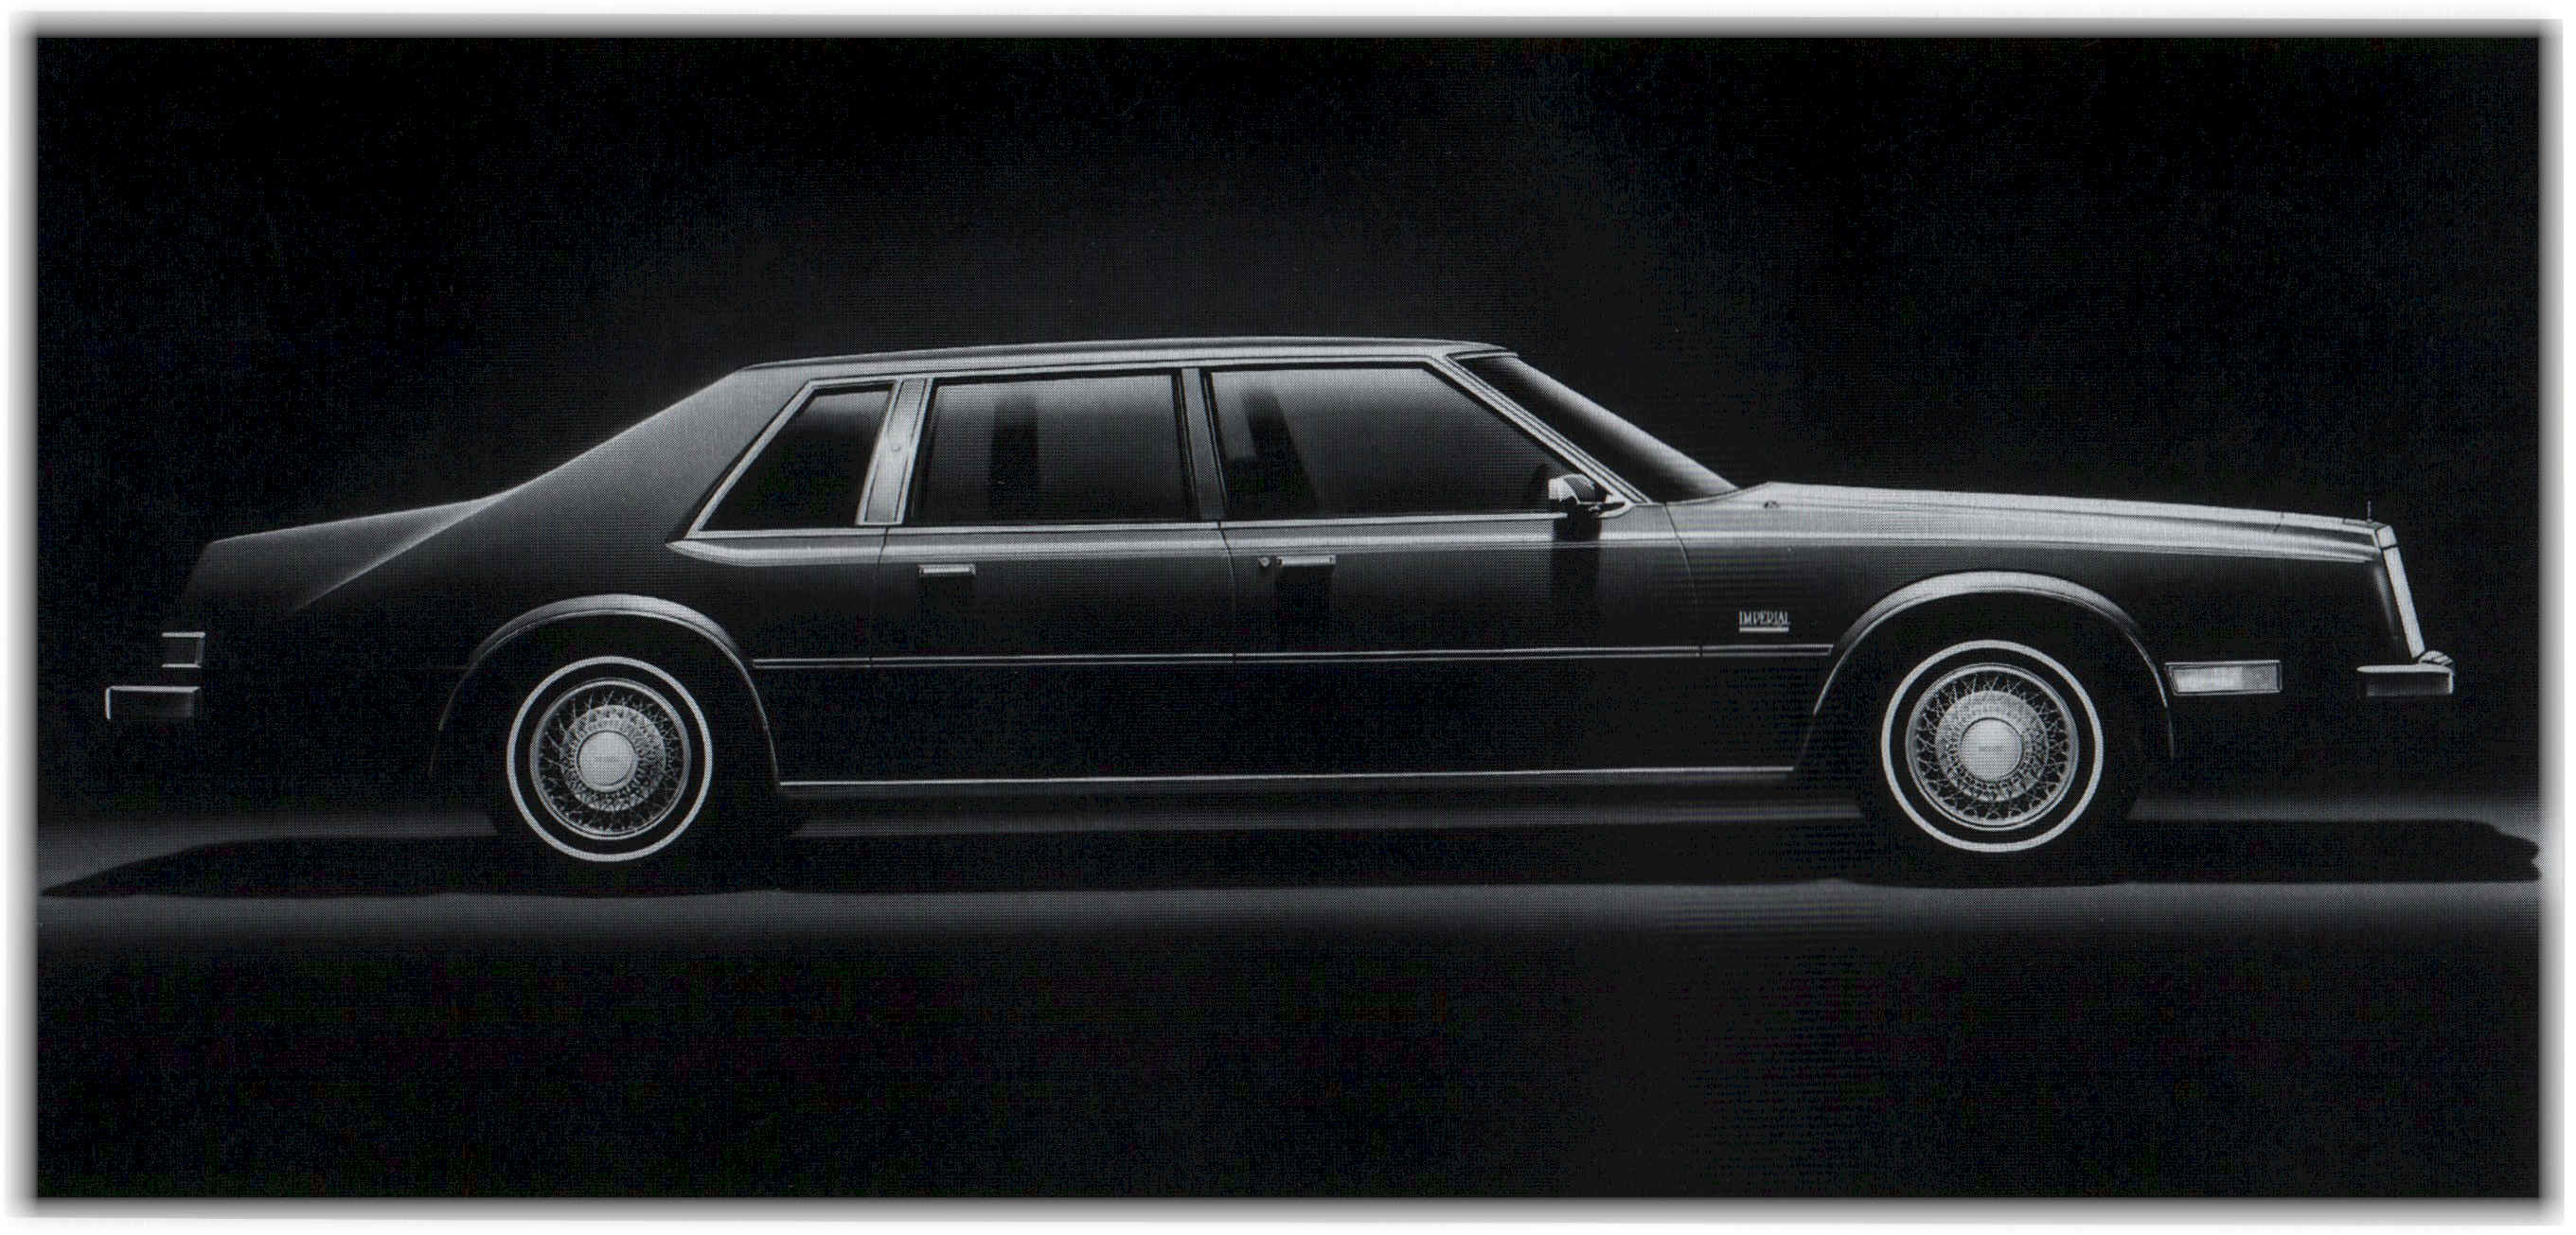 Chrysler Newport limousine